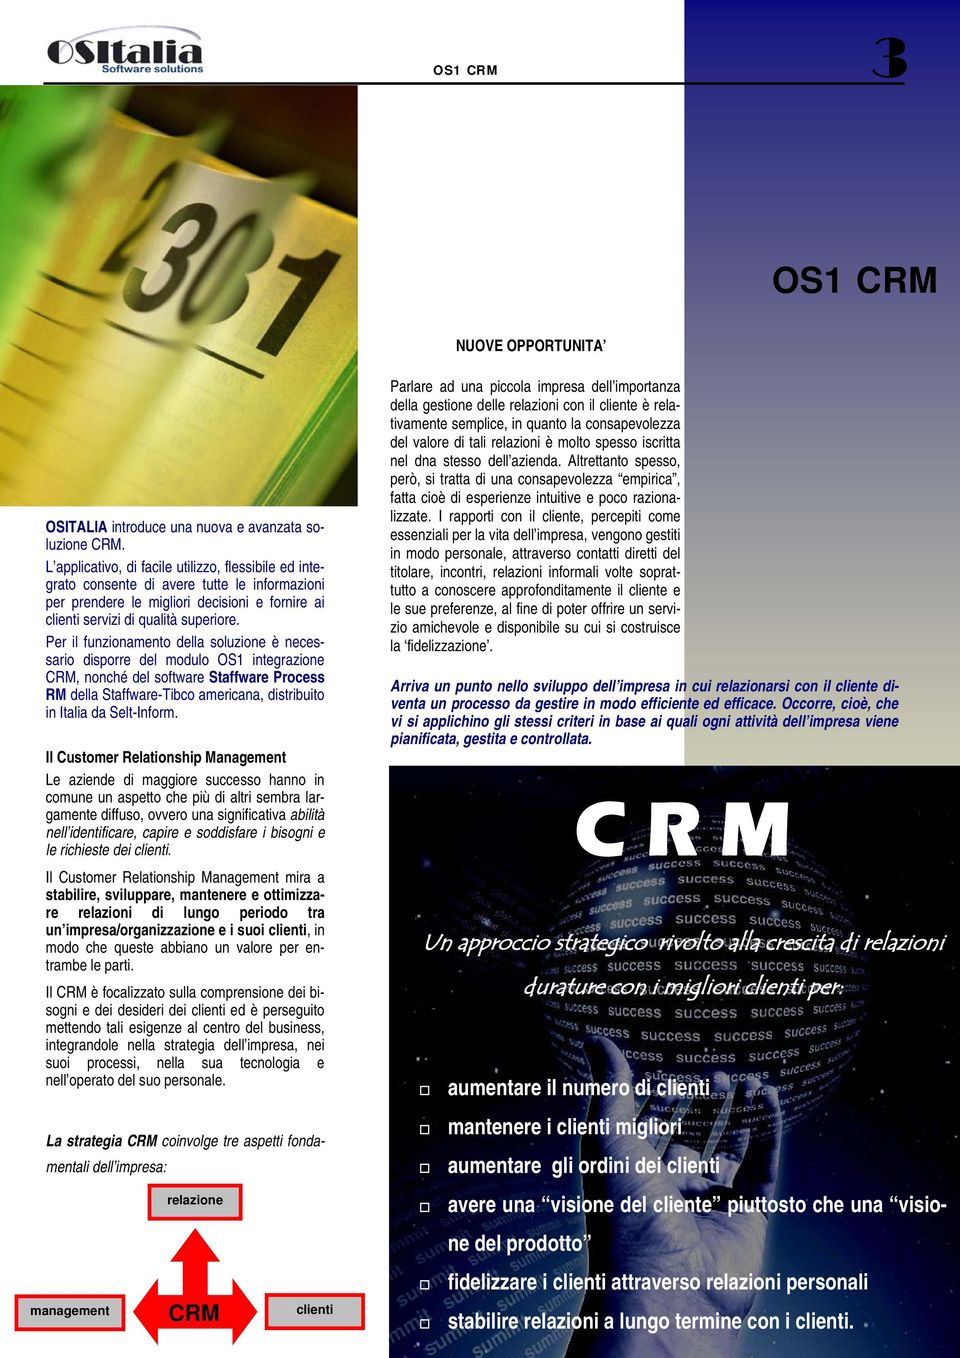 Per il funzionamento della soluzione è necessario disporre del modulo OS1 integrazione CRM, nonché del software Staffware Process RM della Staffware-Tibco americana, distribuito in Italia da